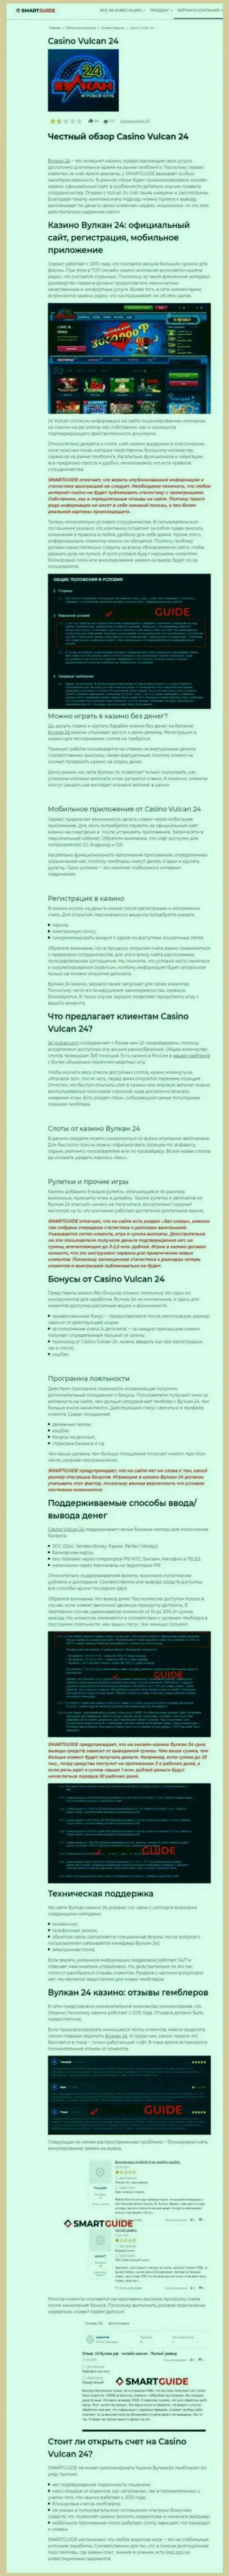 Вулкан 24 - это компания, зарабатывающая на грабеже денежных вложений клиентов (обзор мошенничества)